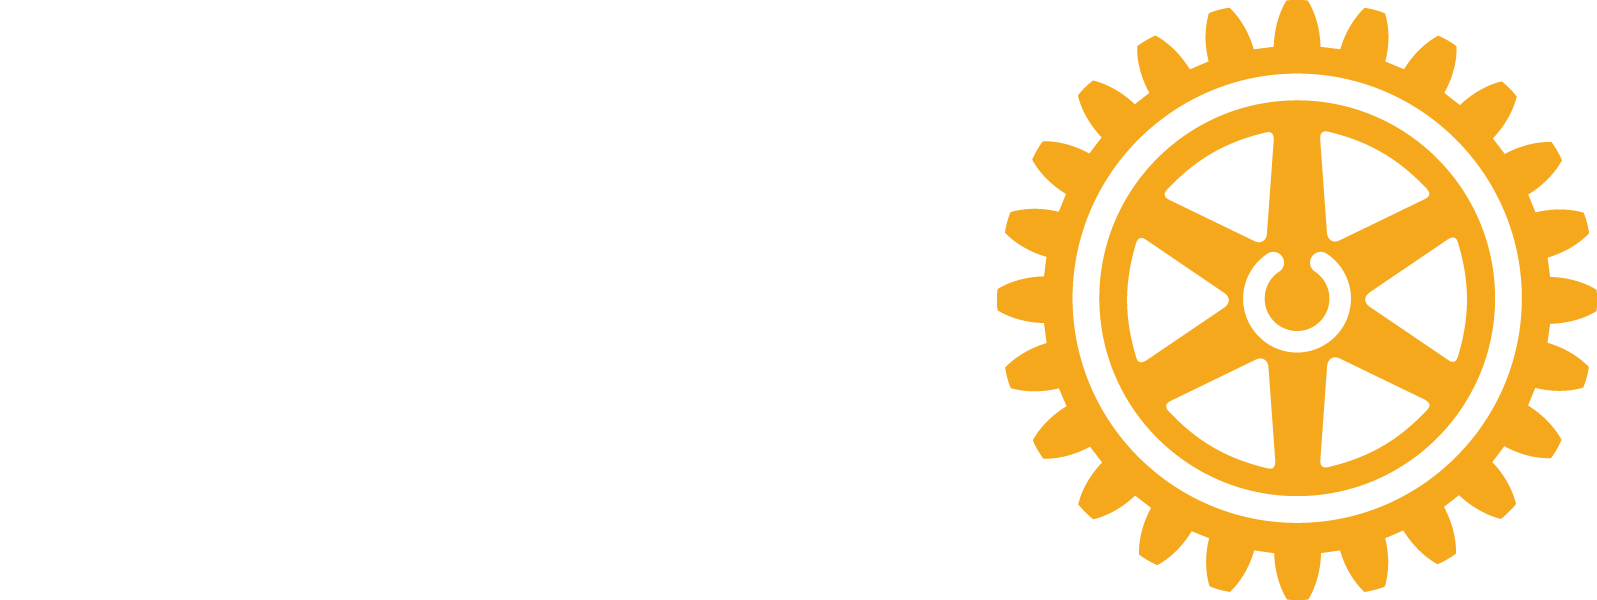 District 9620 logo